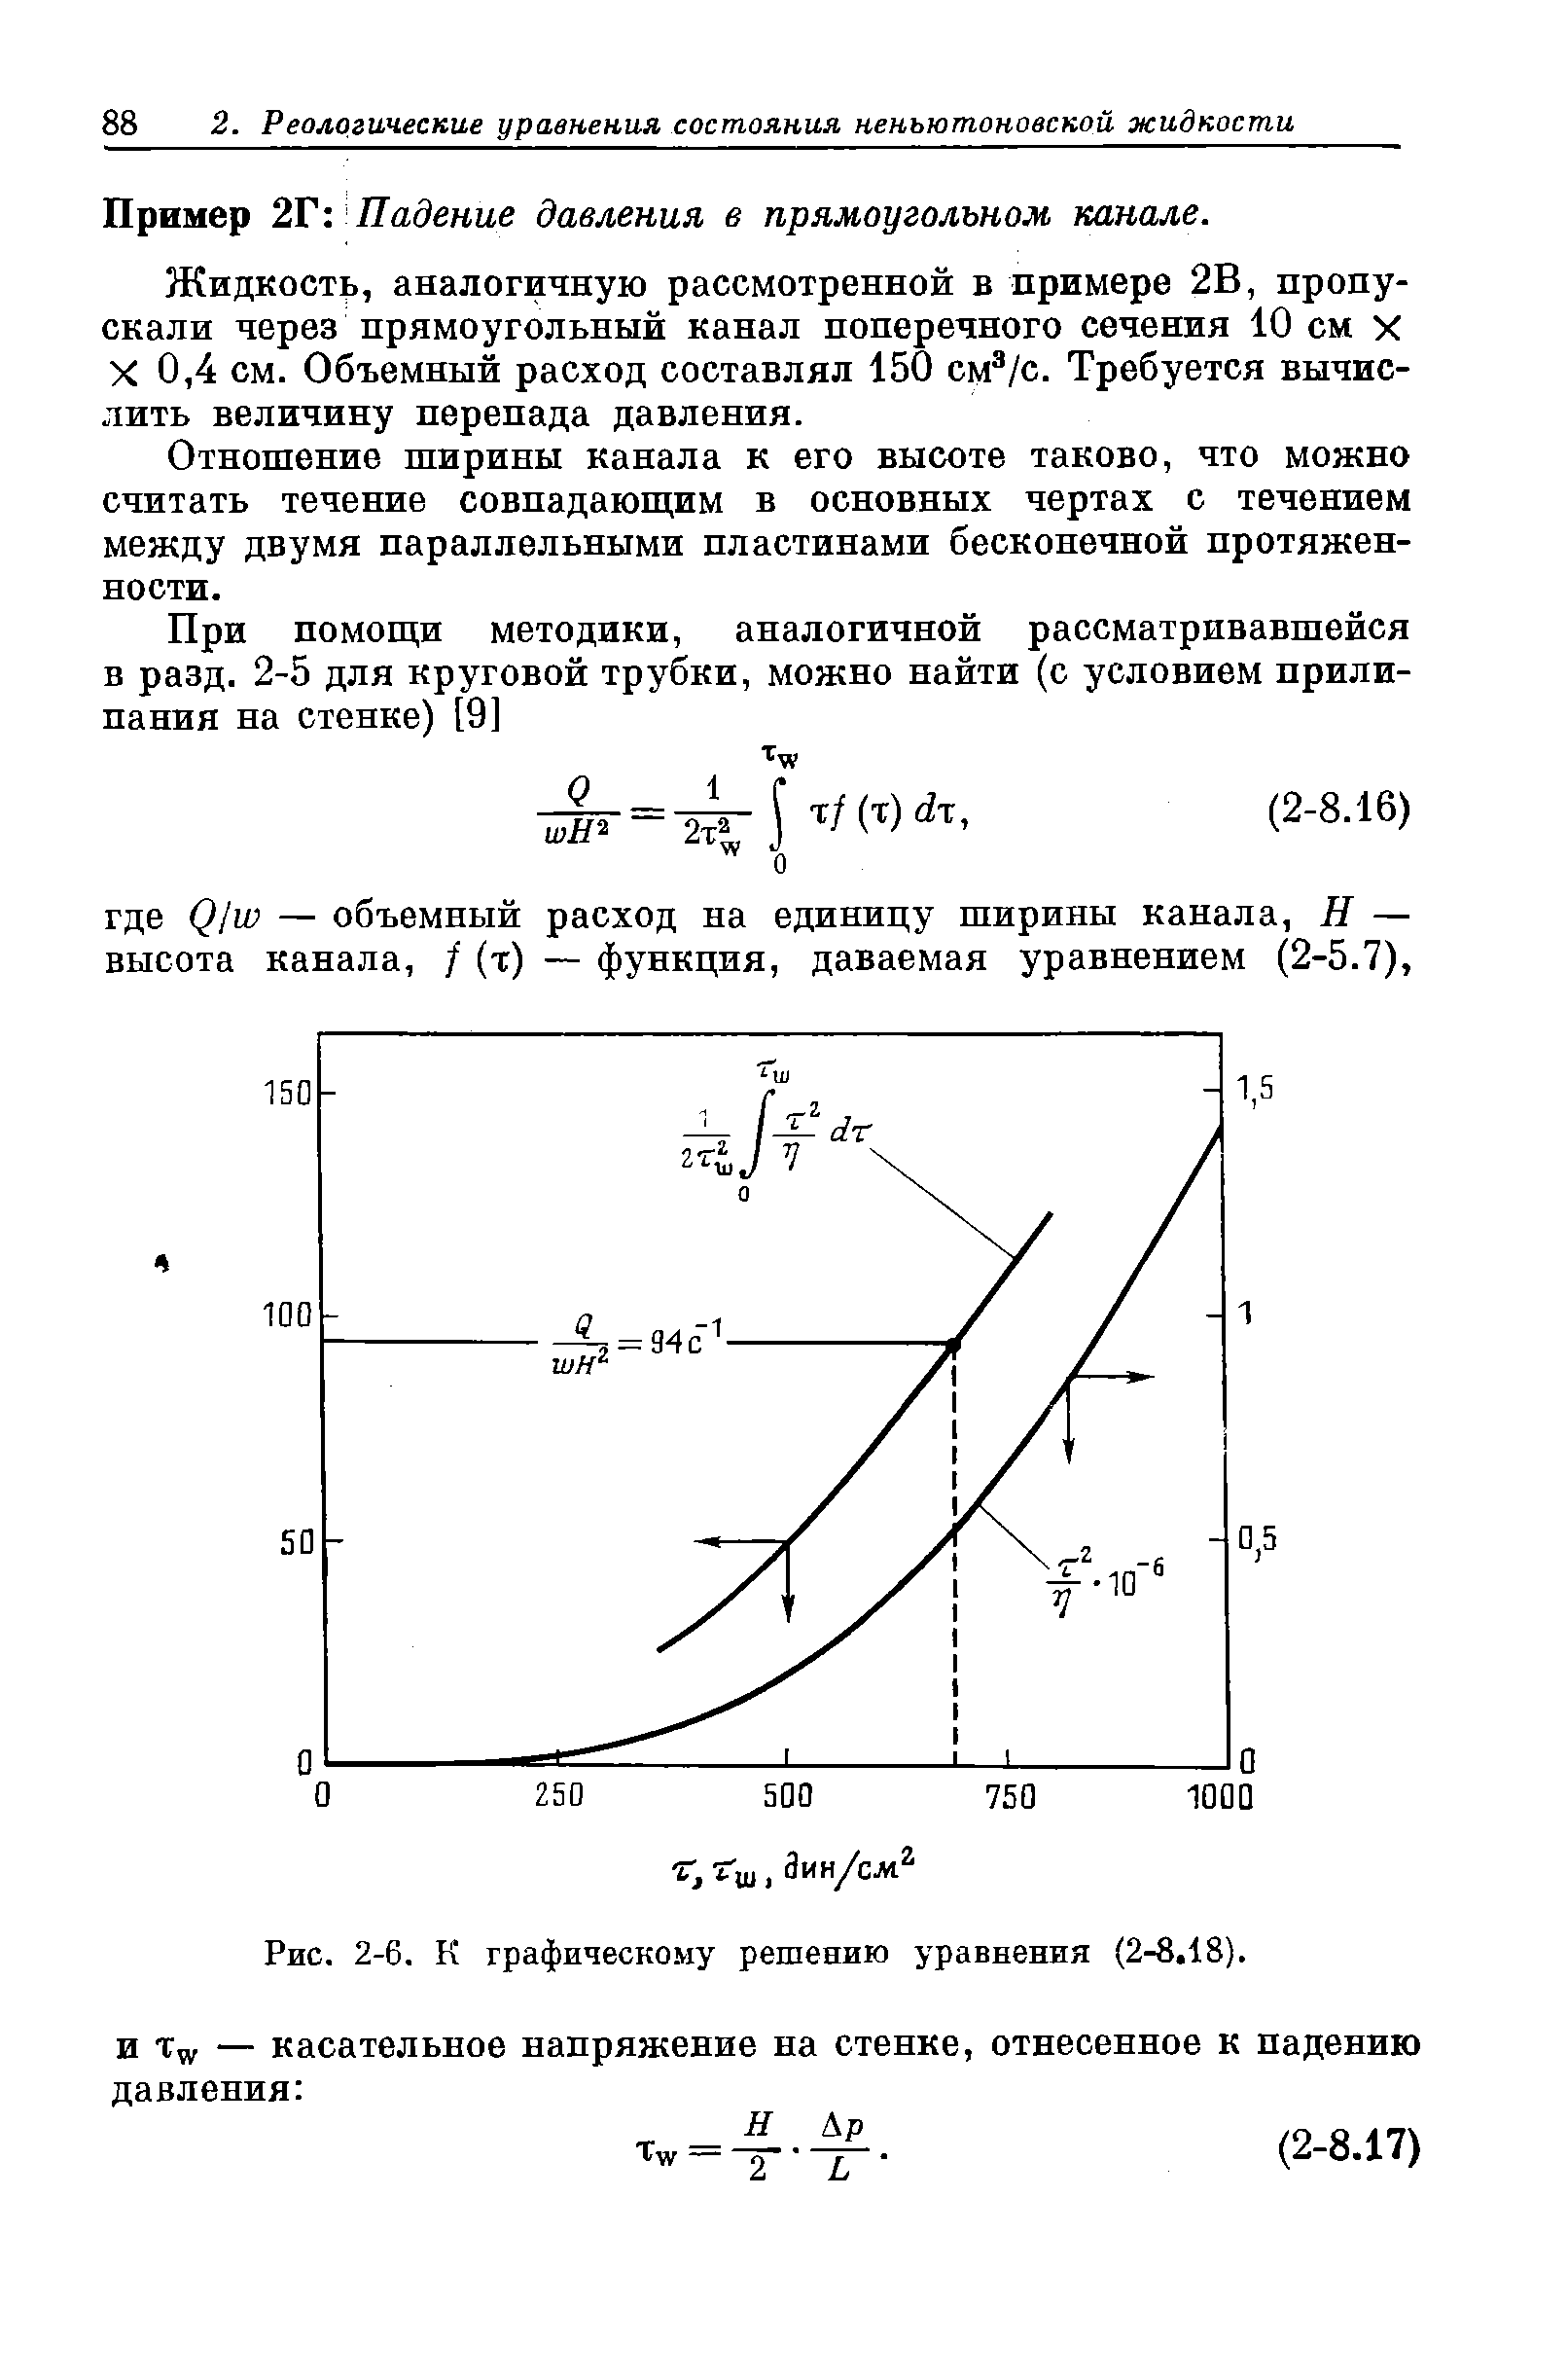 Рис. 2-6. К графическому решению уравнения (2-8.18).
